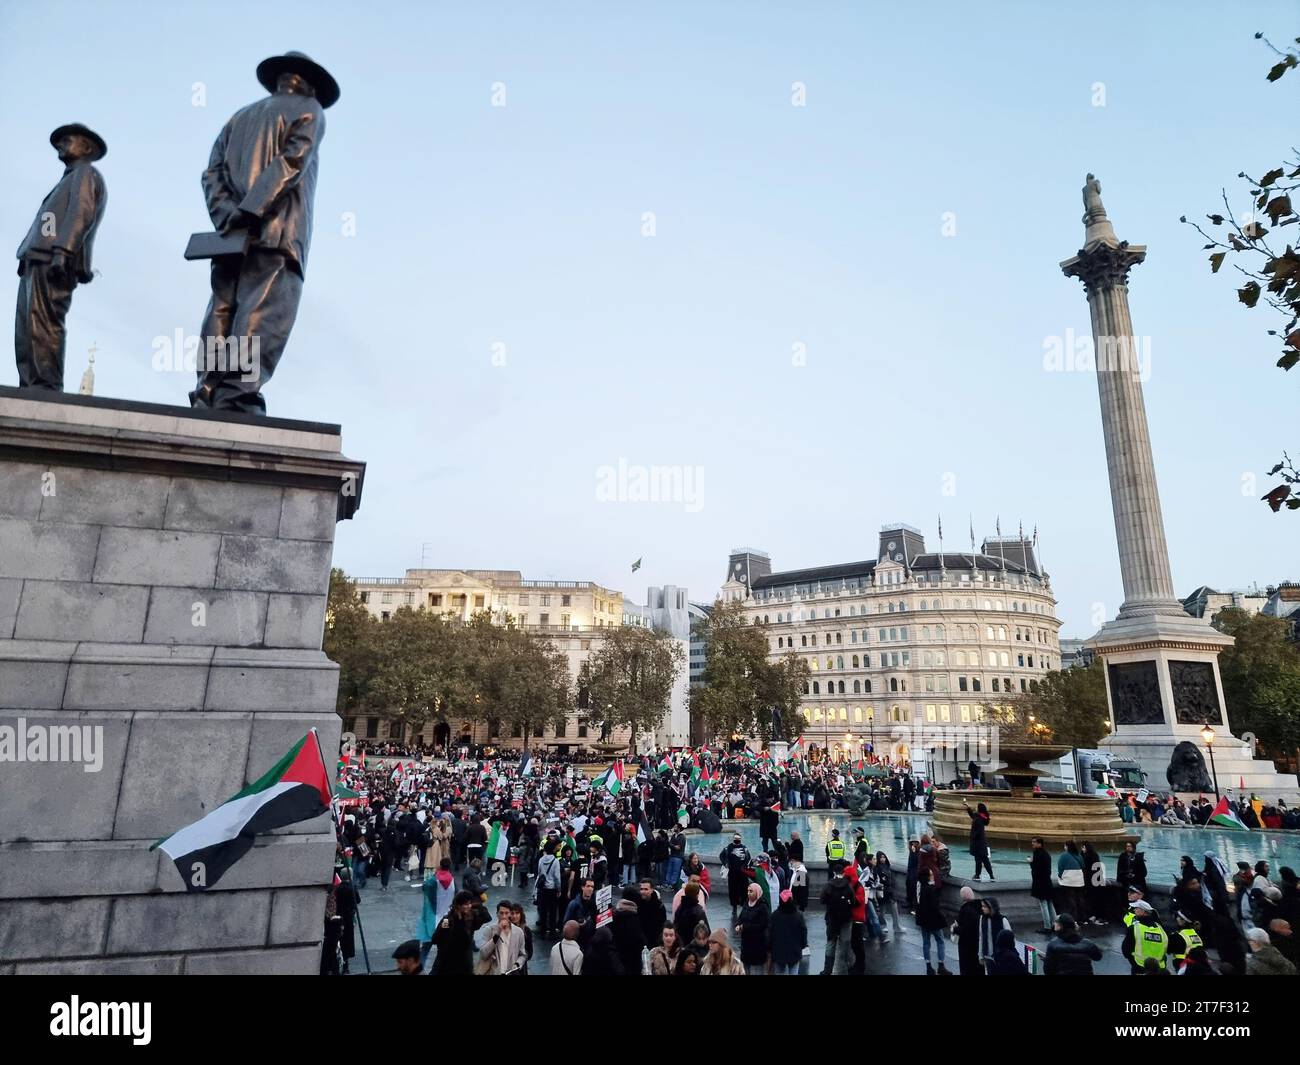 Tausende von Demonstranten erheben Stimmen, tragen Plakate und zeigen ihre Unterstützung für die Palästinenser am Trafalgar Square im Zentrum Londons. Vereinigtes Königreich. Stockfoto